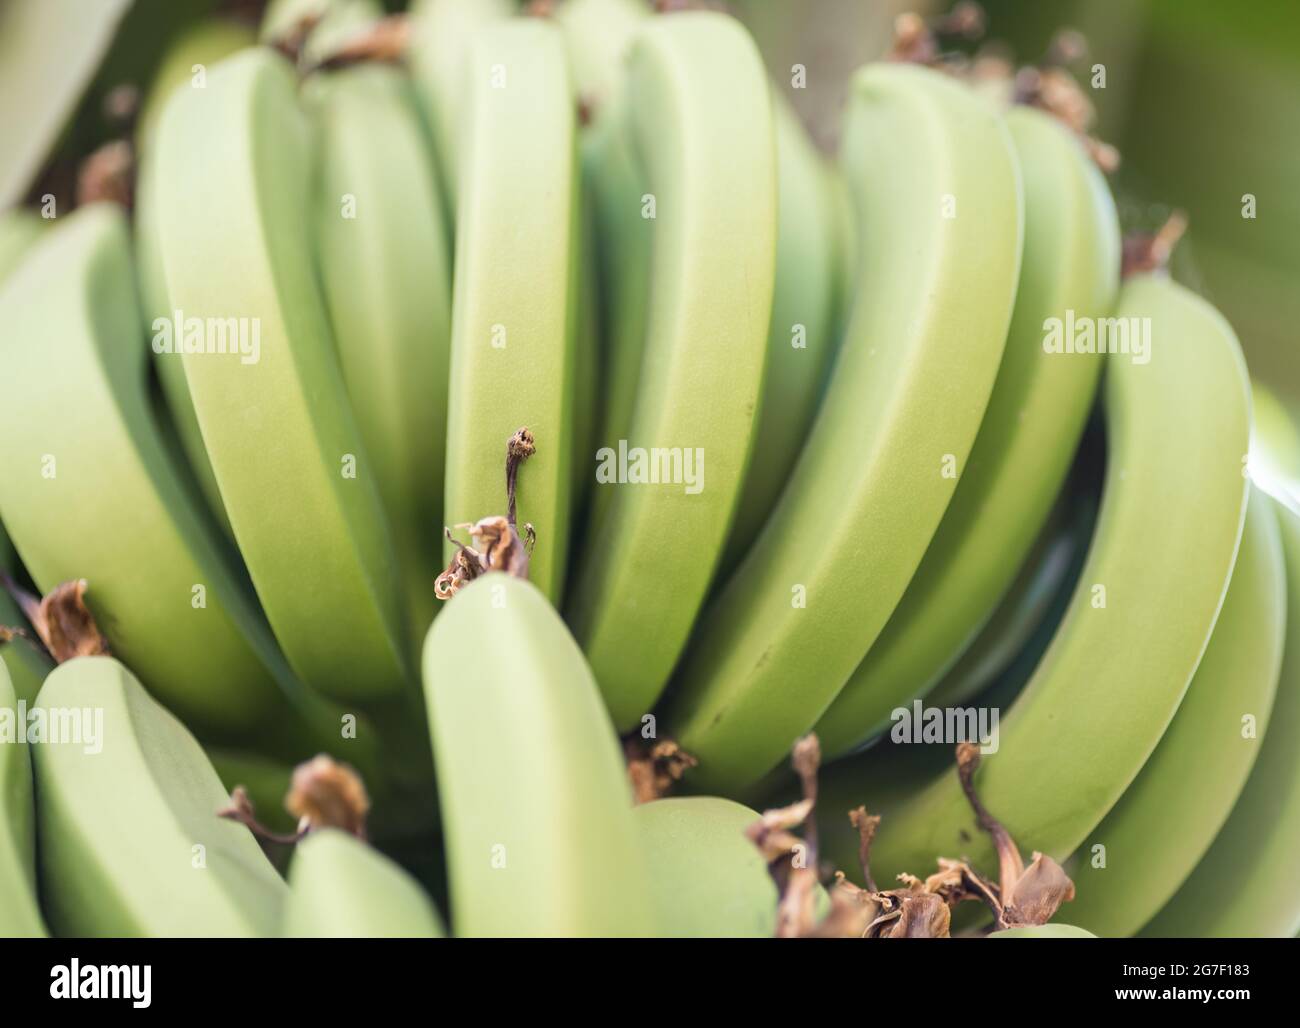 motif de la nourriture fraîche naturelle banane fond vers le haut Banque D'Images